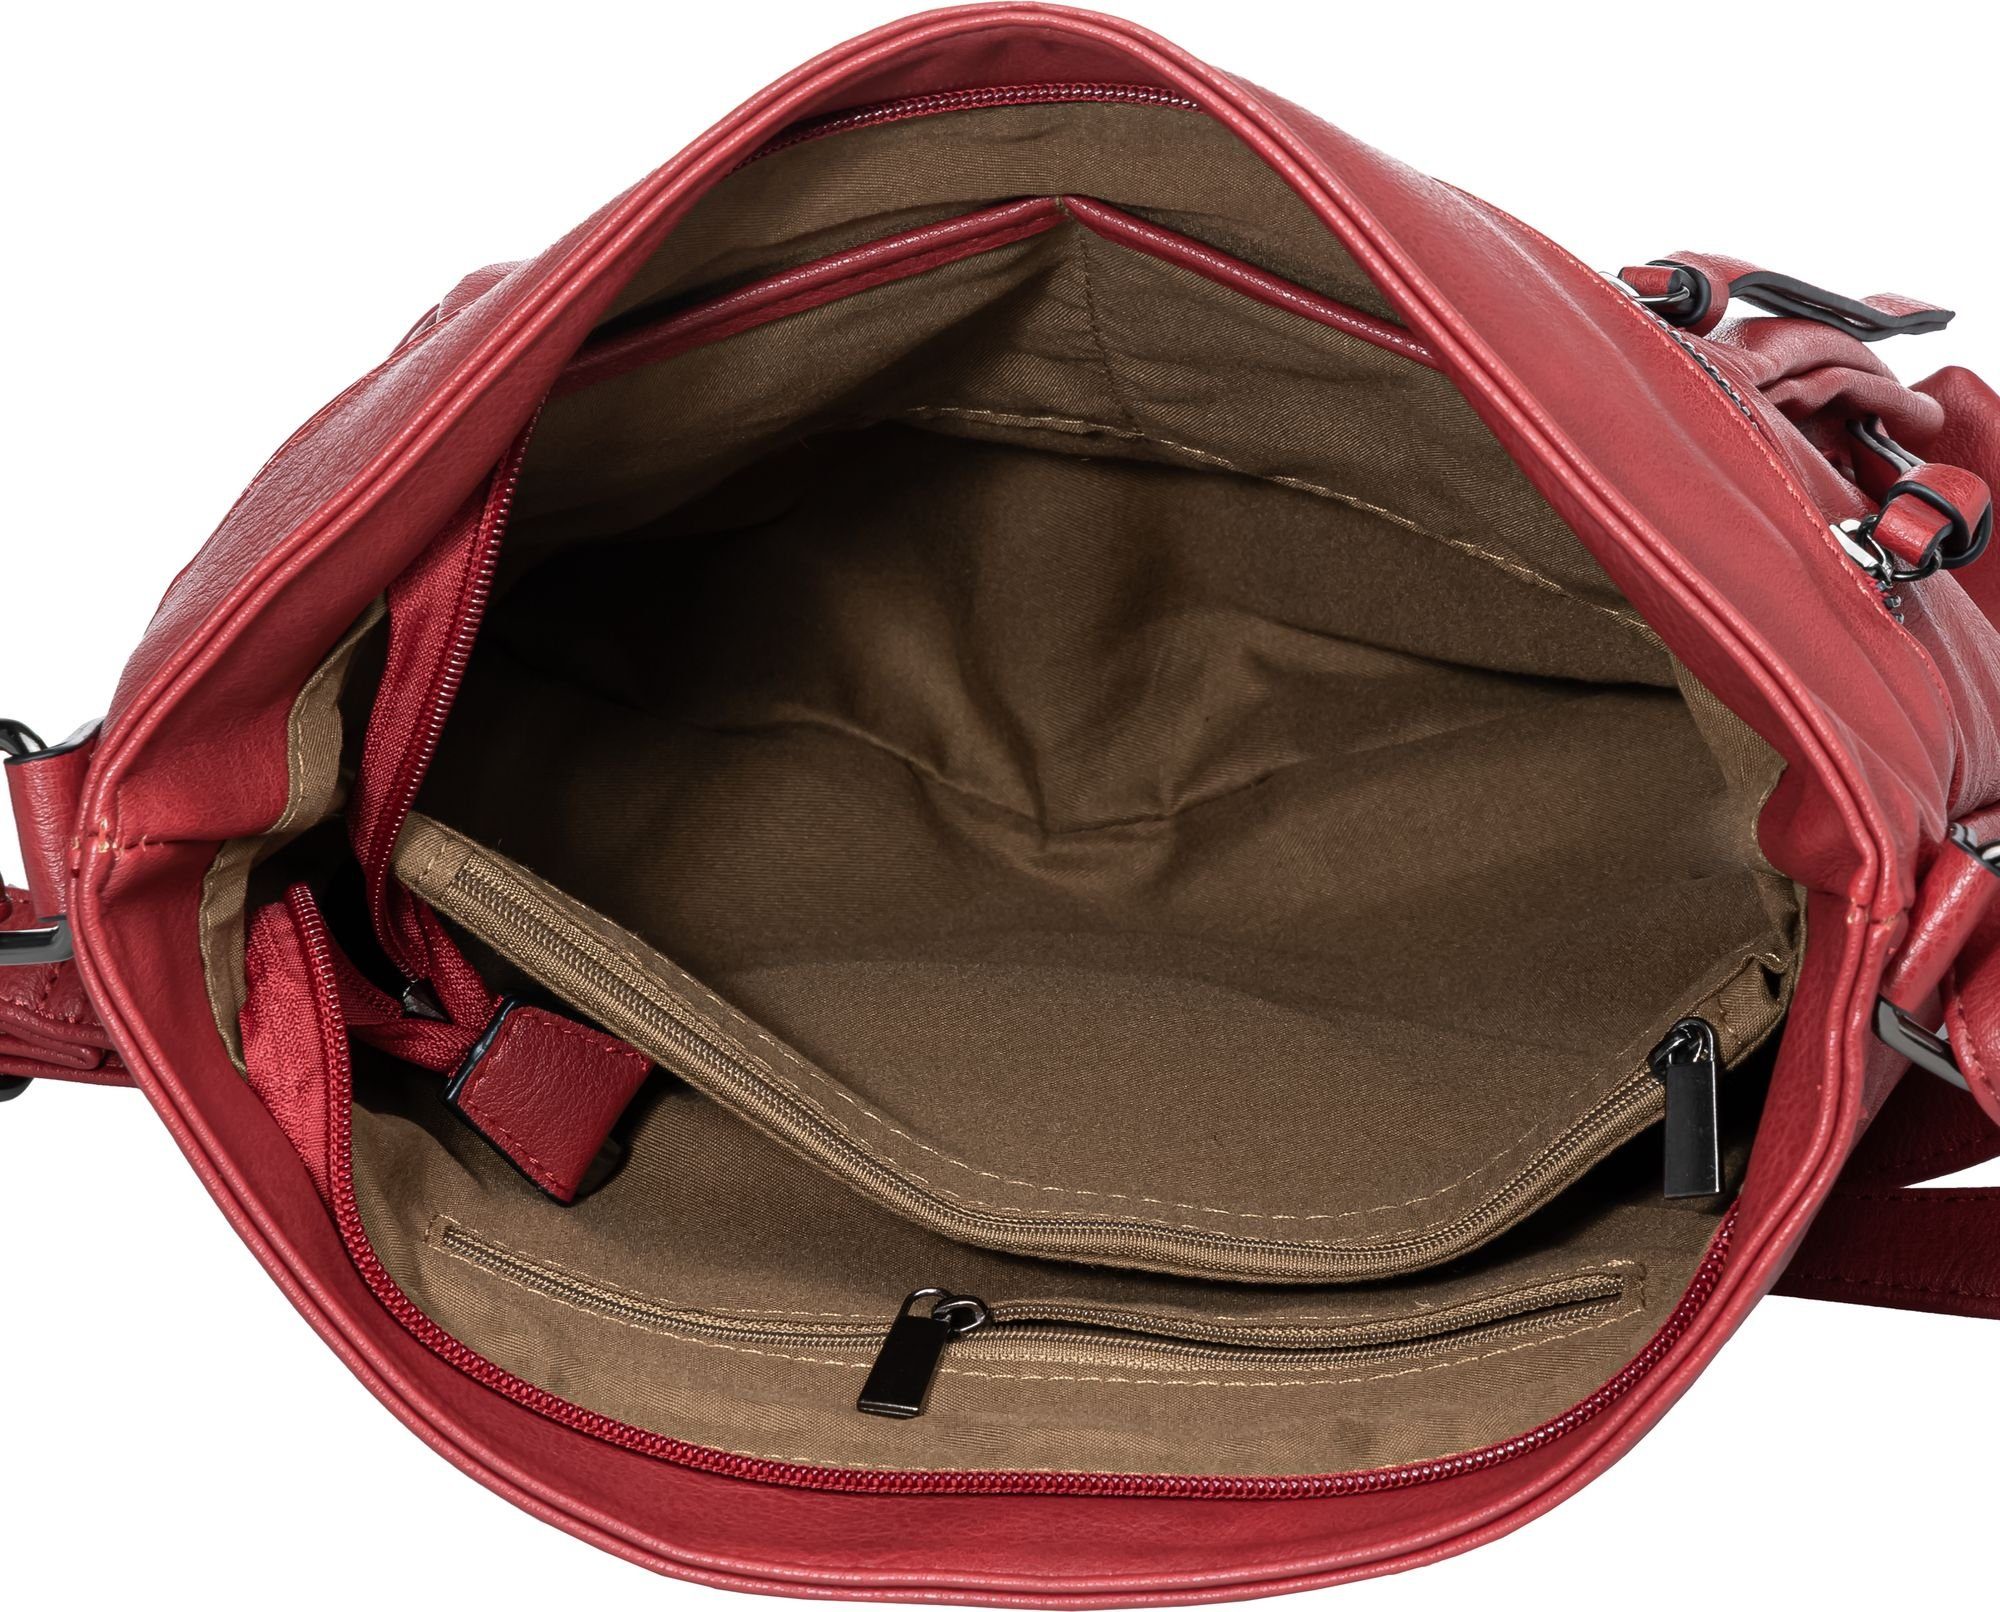 Damen Umhängetasche Crossbody TS1070 Caspar mittelgroße Bag Umhängetasche sportlich elegante rot